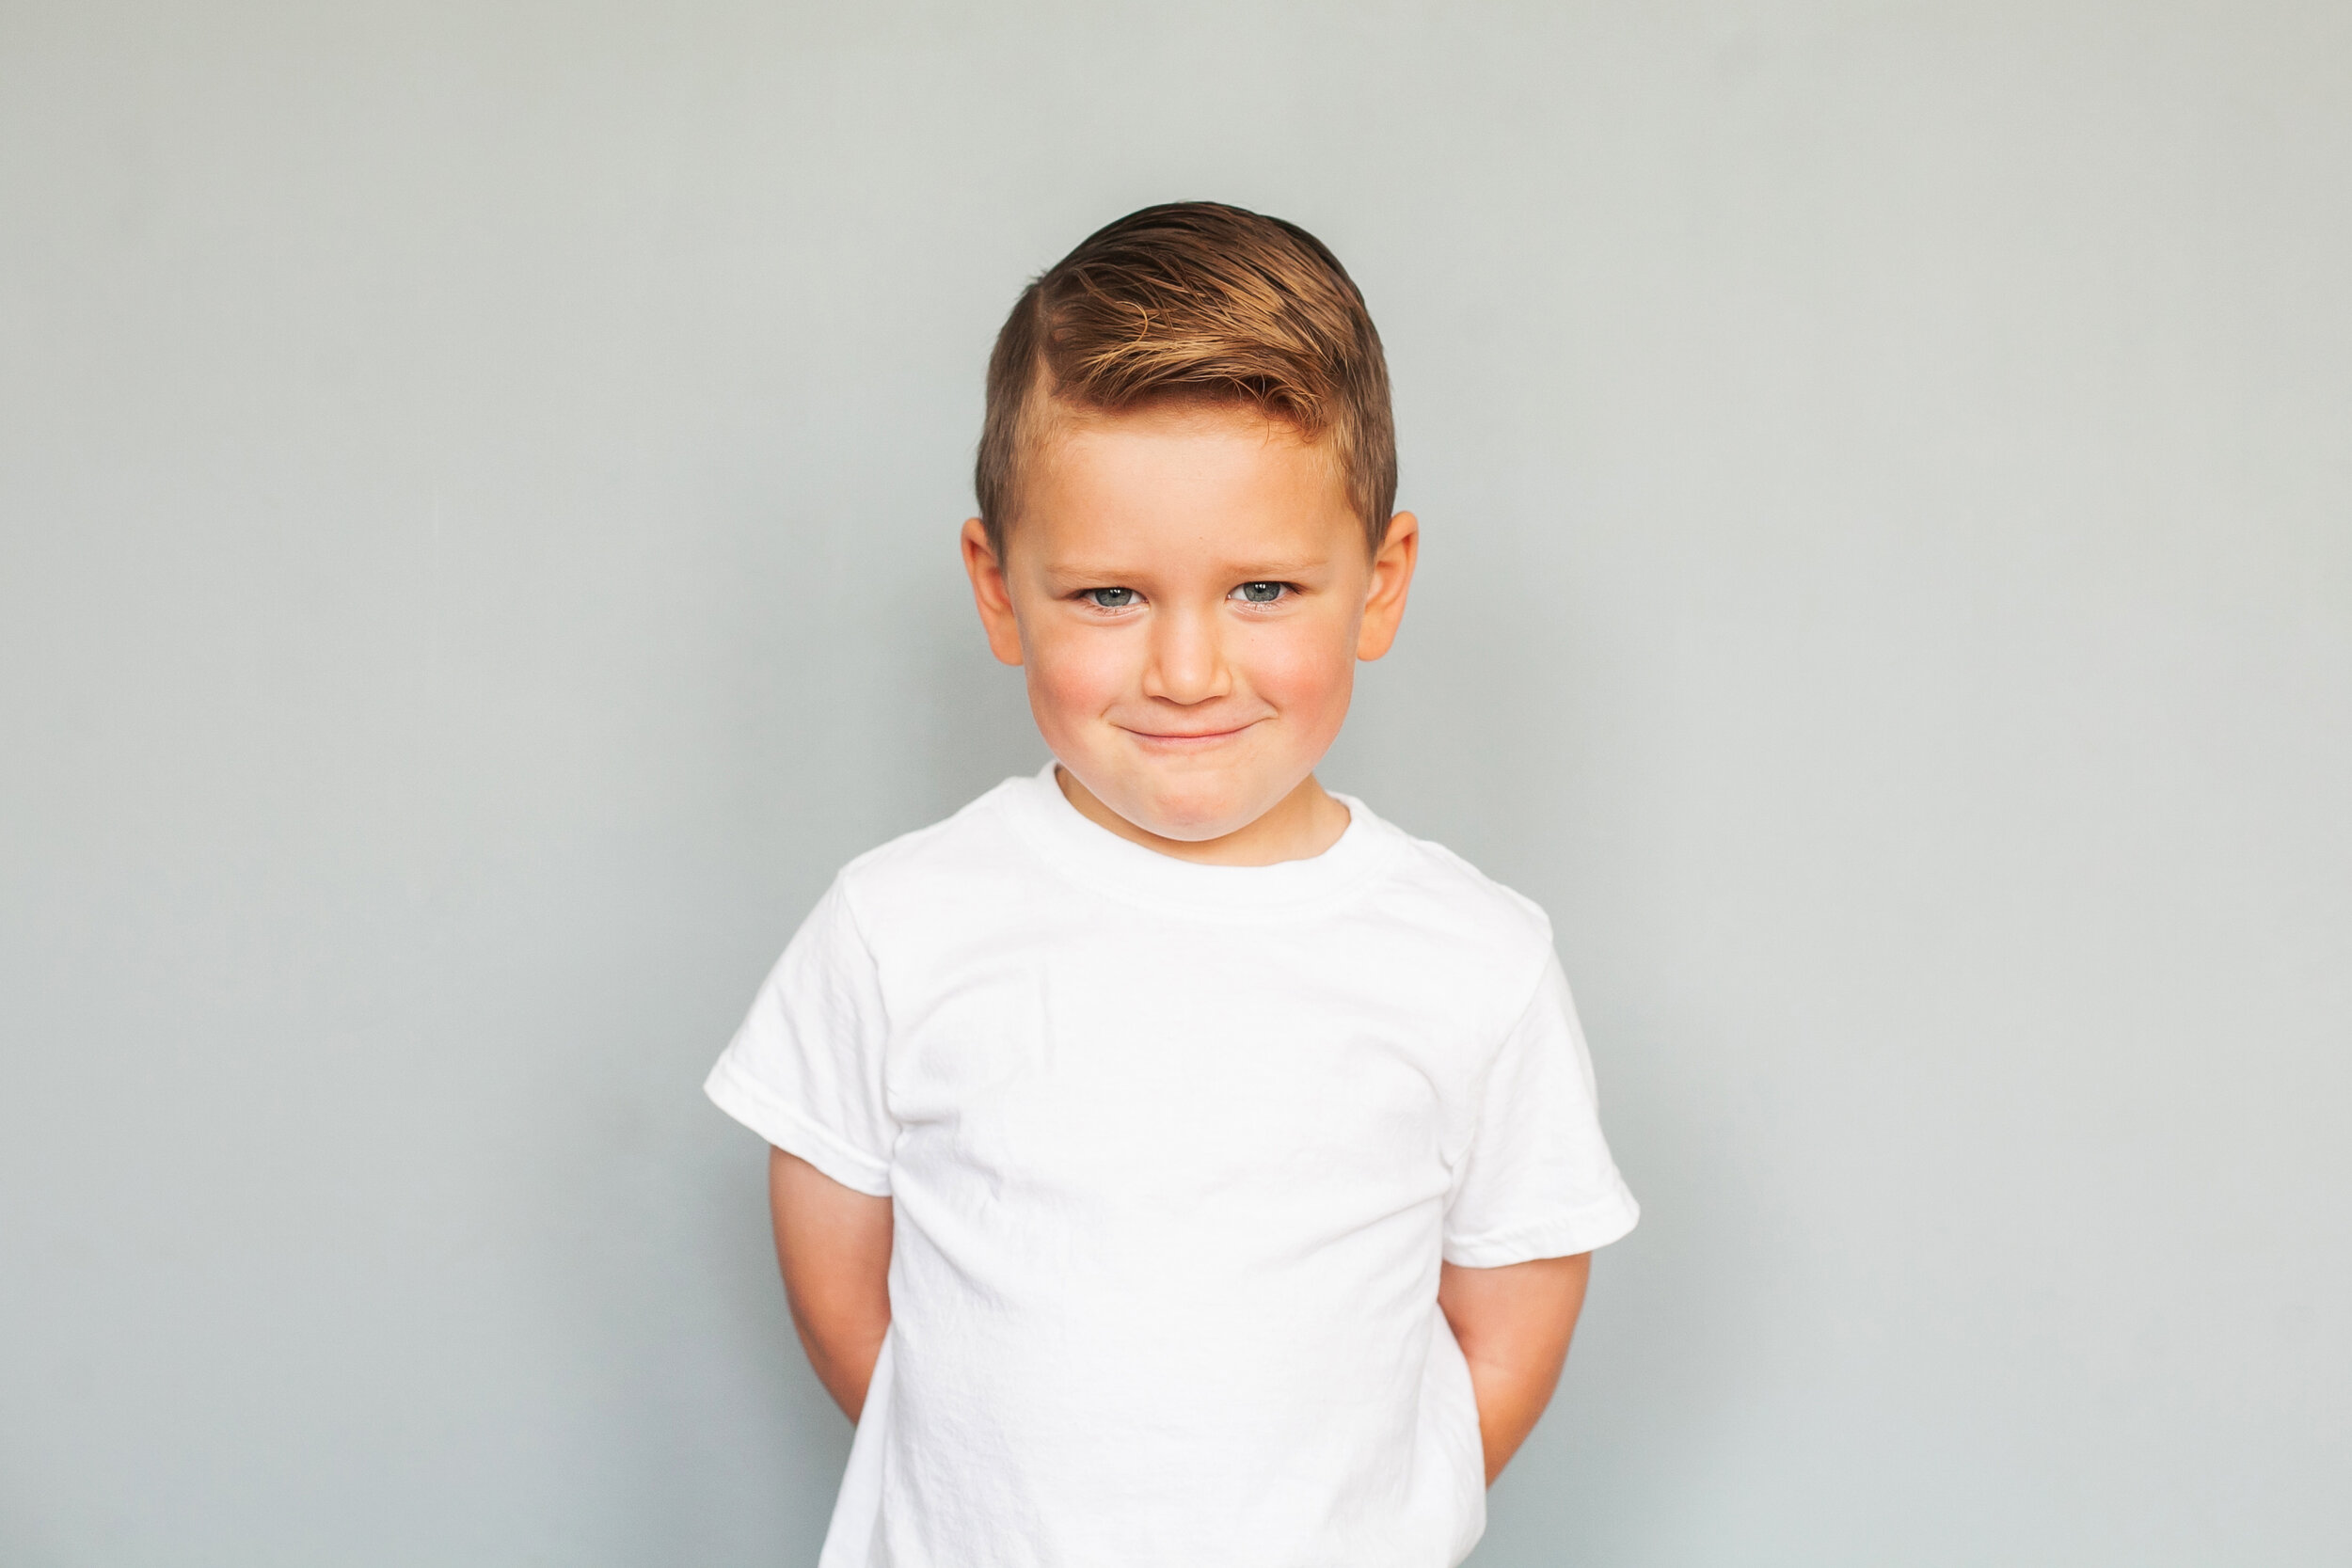 mischievous-boy-children's-portraits-simple-gray-background-white-t-shirt-true-personality-children's-headshots-colleyville-tx